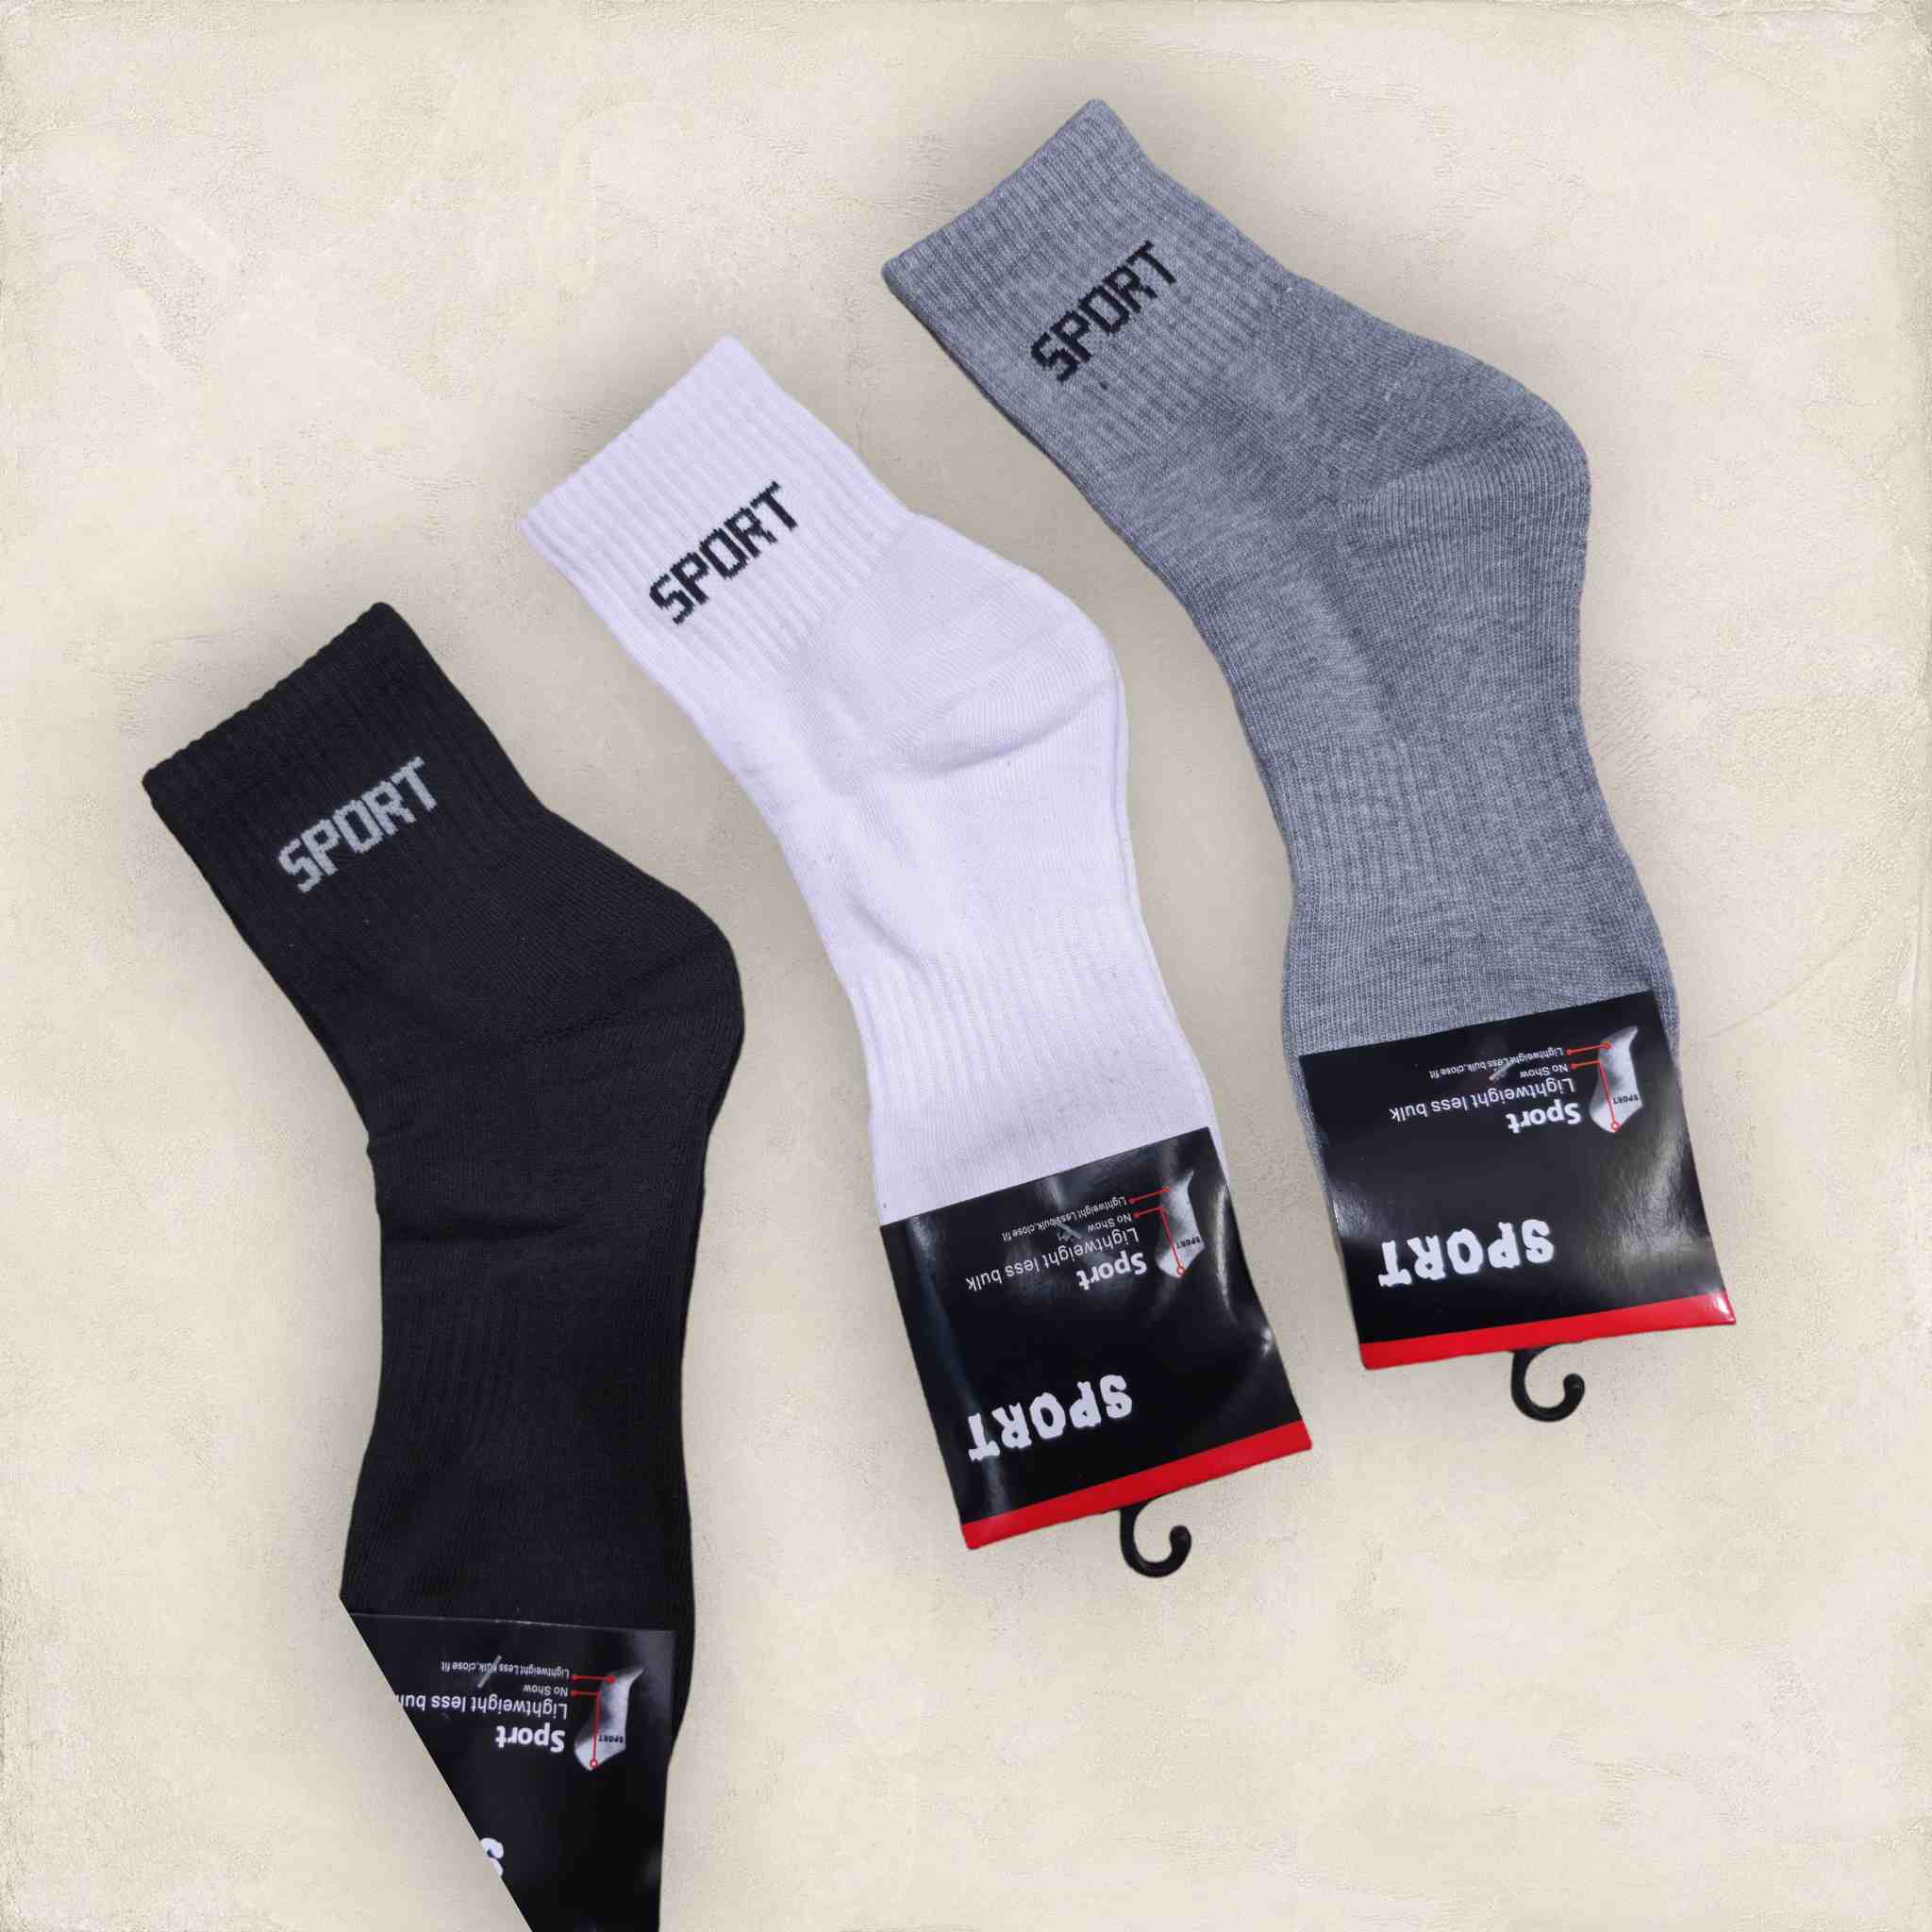 Sport baklo half socks